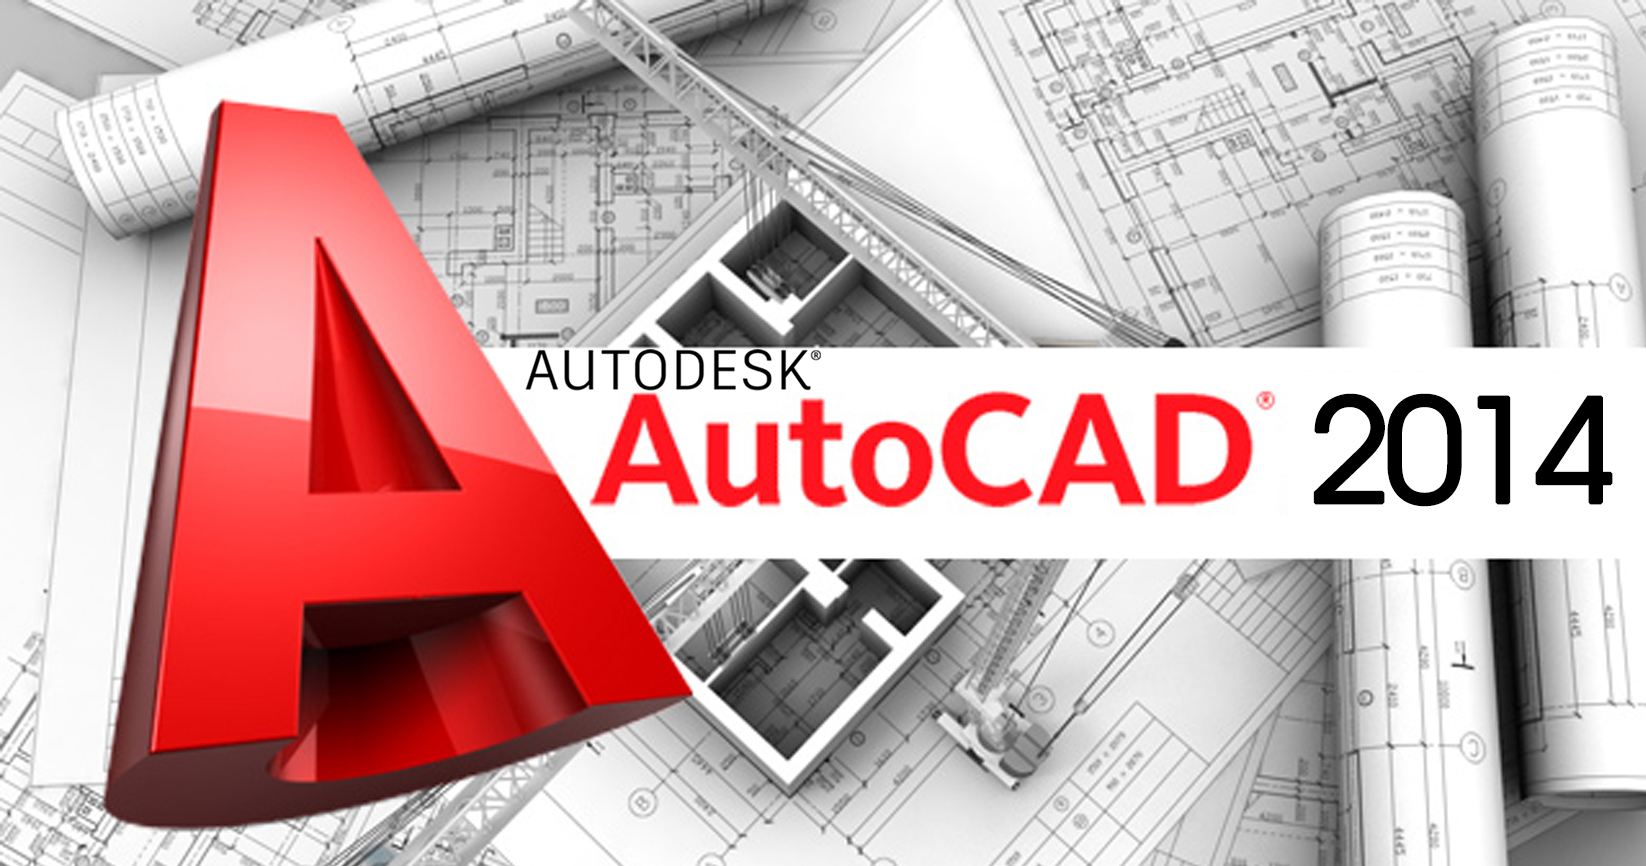 AutoCad 2014 - Download - Hướng dẫn cài đặt nhanh nhất